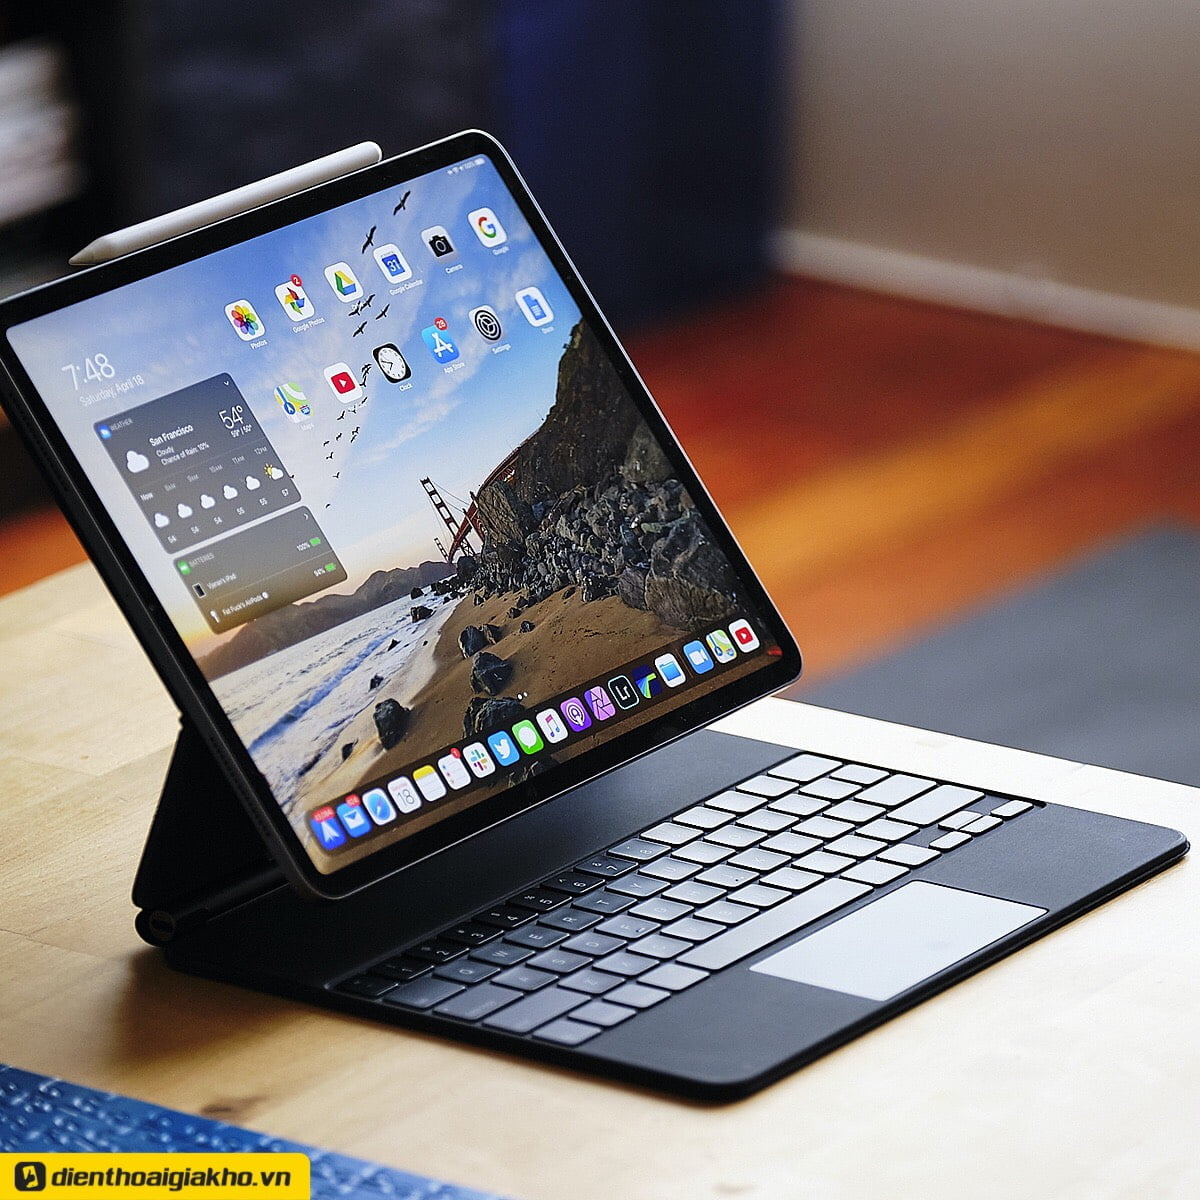 Thông qua công nghệ Bluetooth, sản phẩm sẽ tự ghép đôi với iMac, MacBook hay iPad của bạn một cách nhanh chóng và duy trì kết nối ổn định suốt quá trình sử dụng.